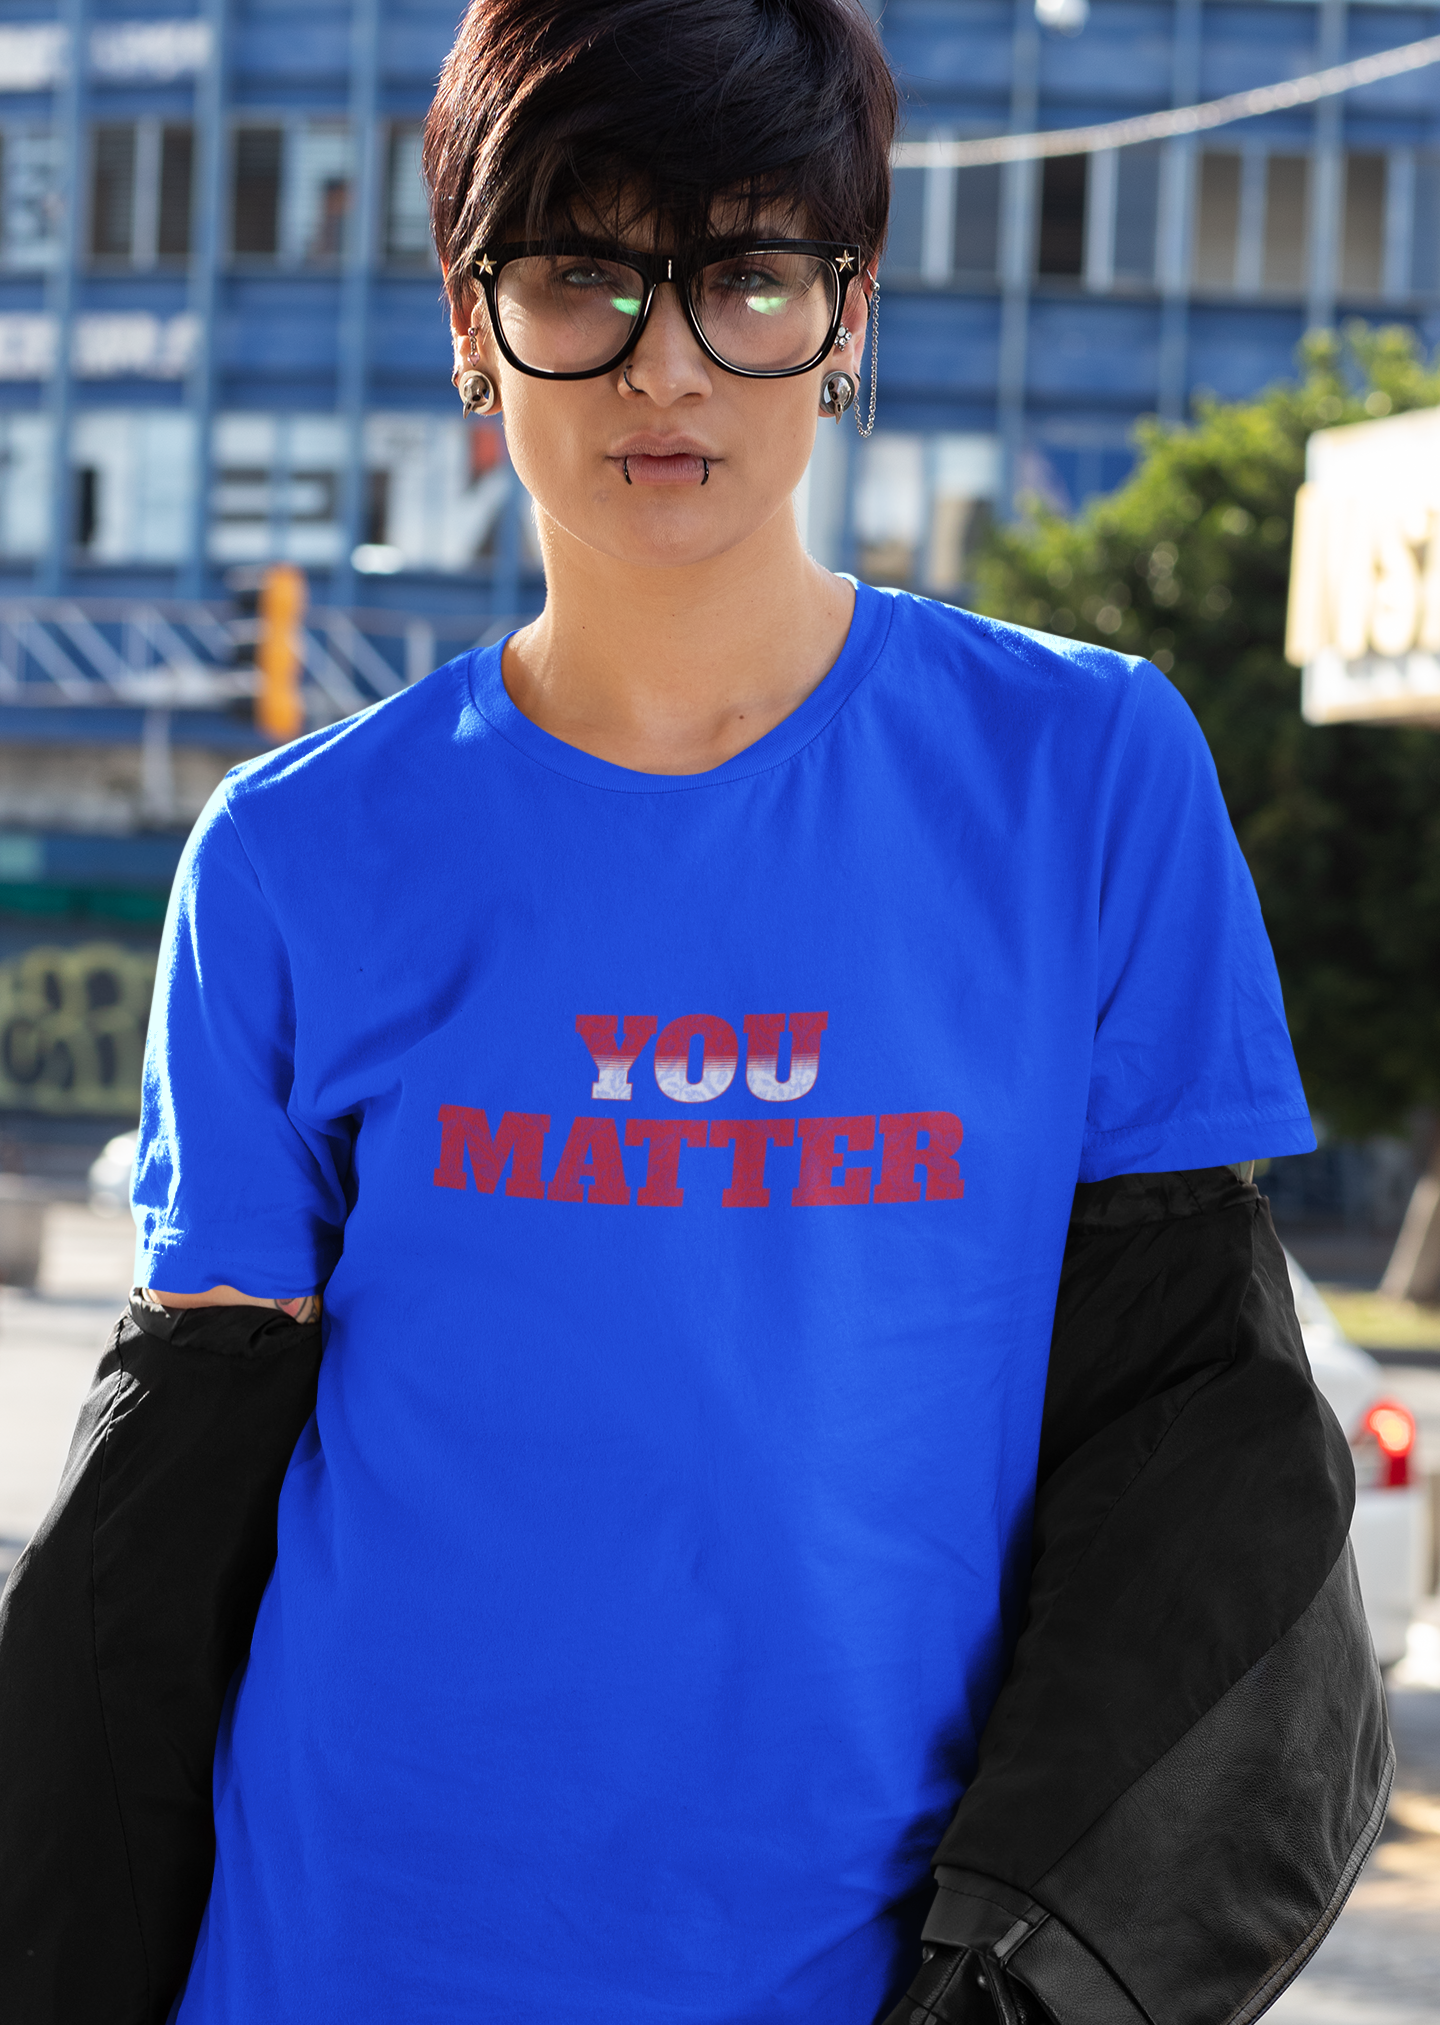 You Matter Unisex T-Shirt